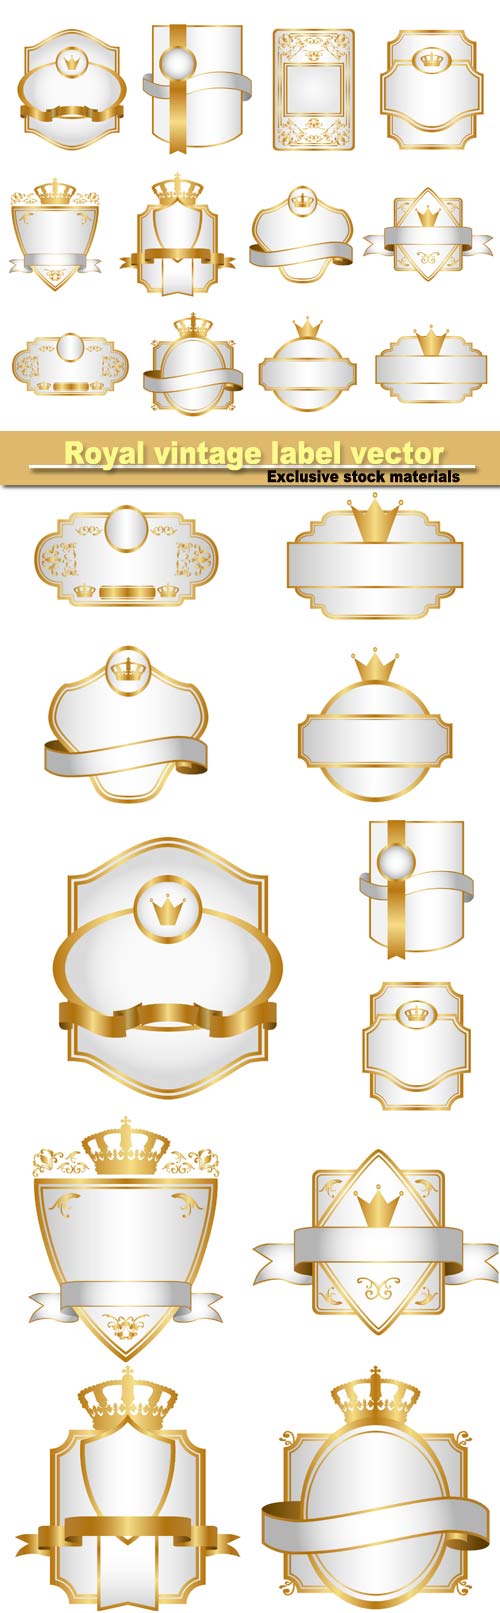 Royal vintage label vector set